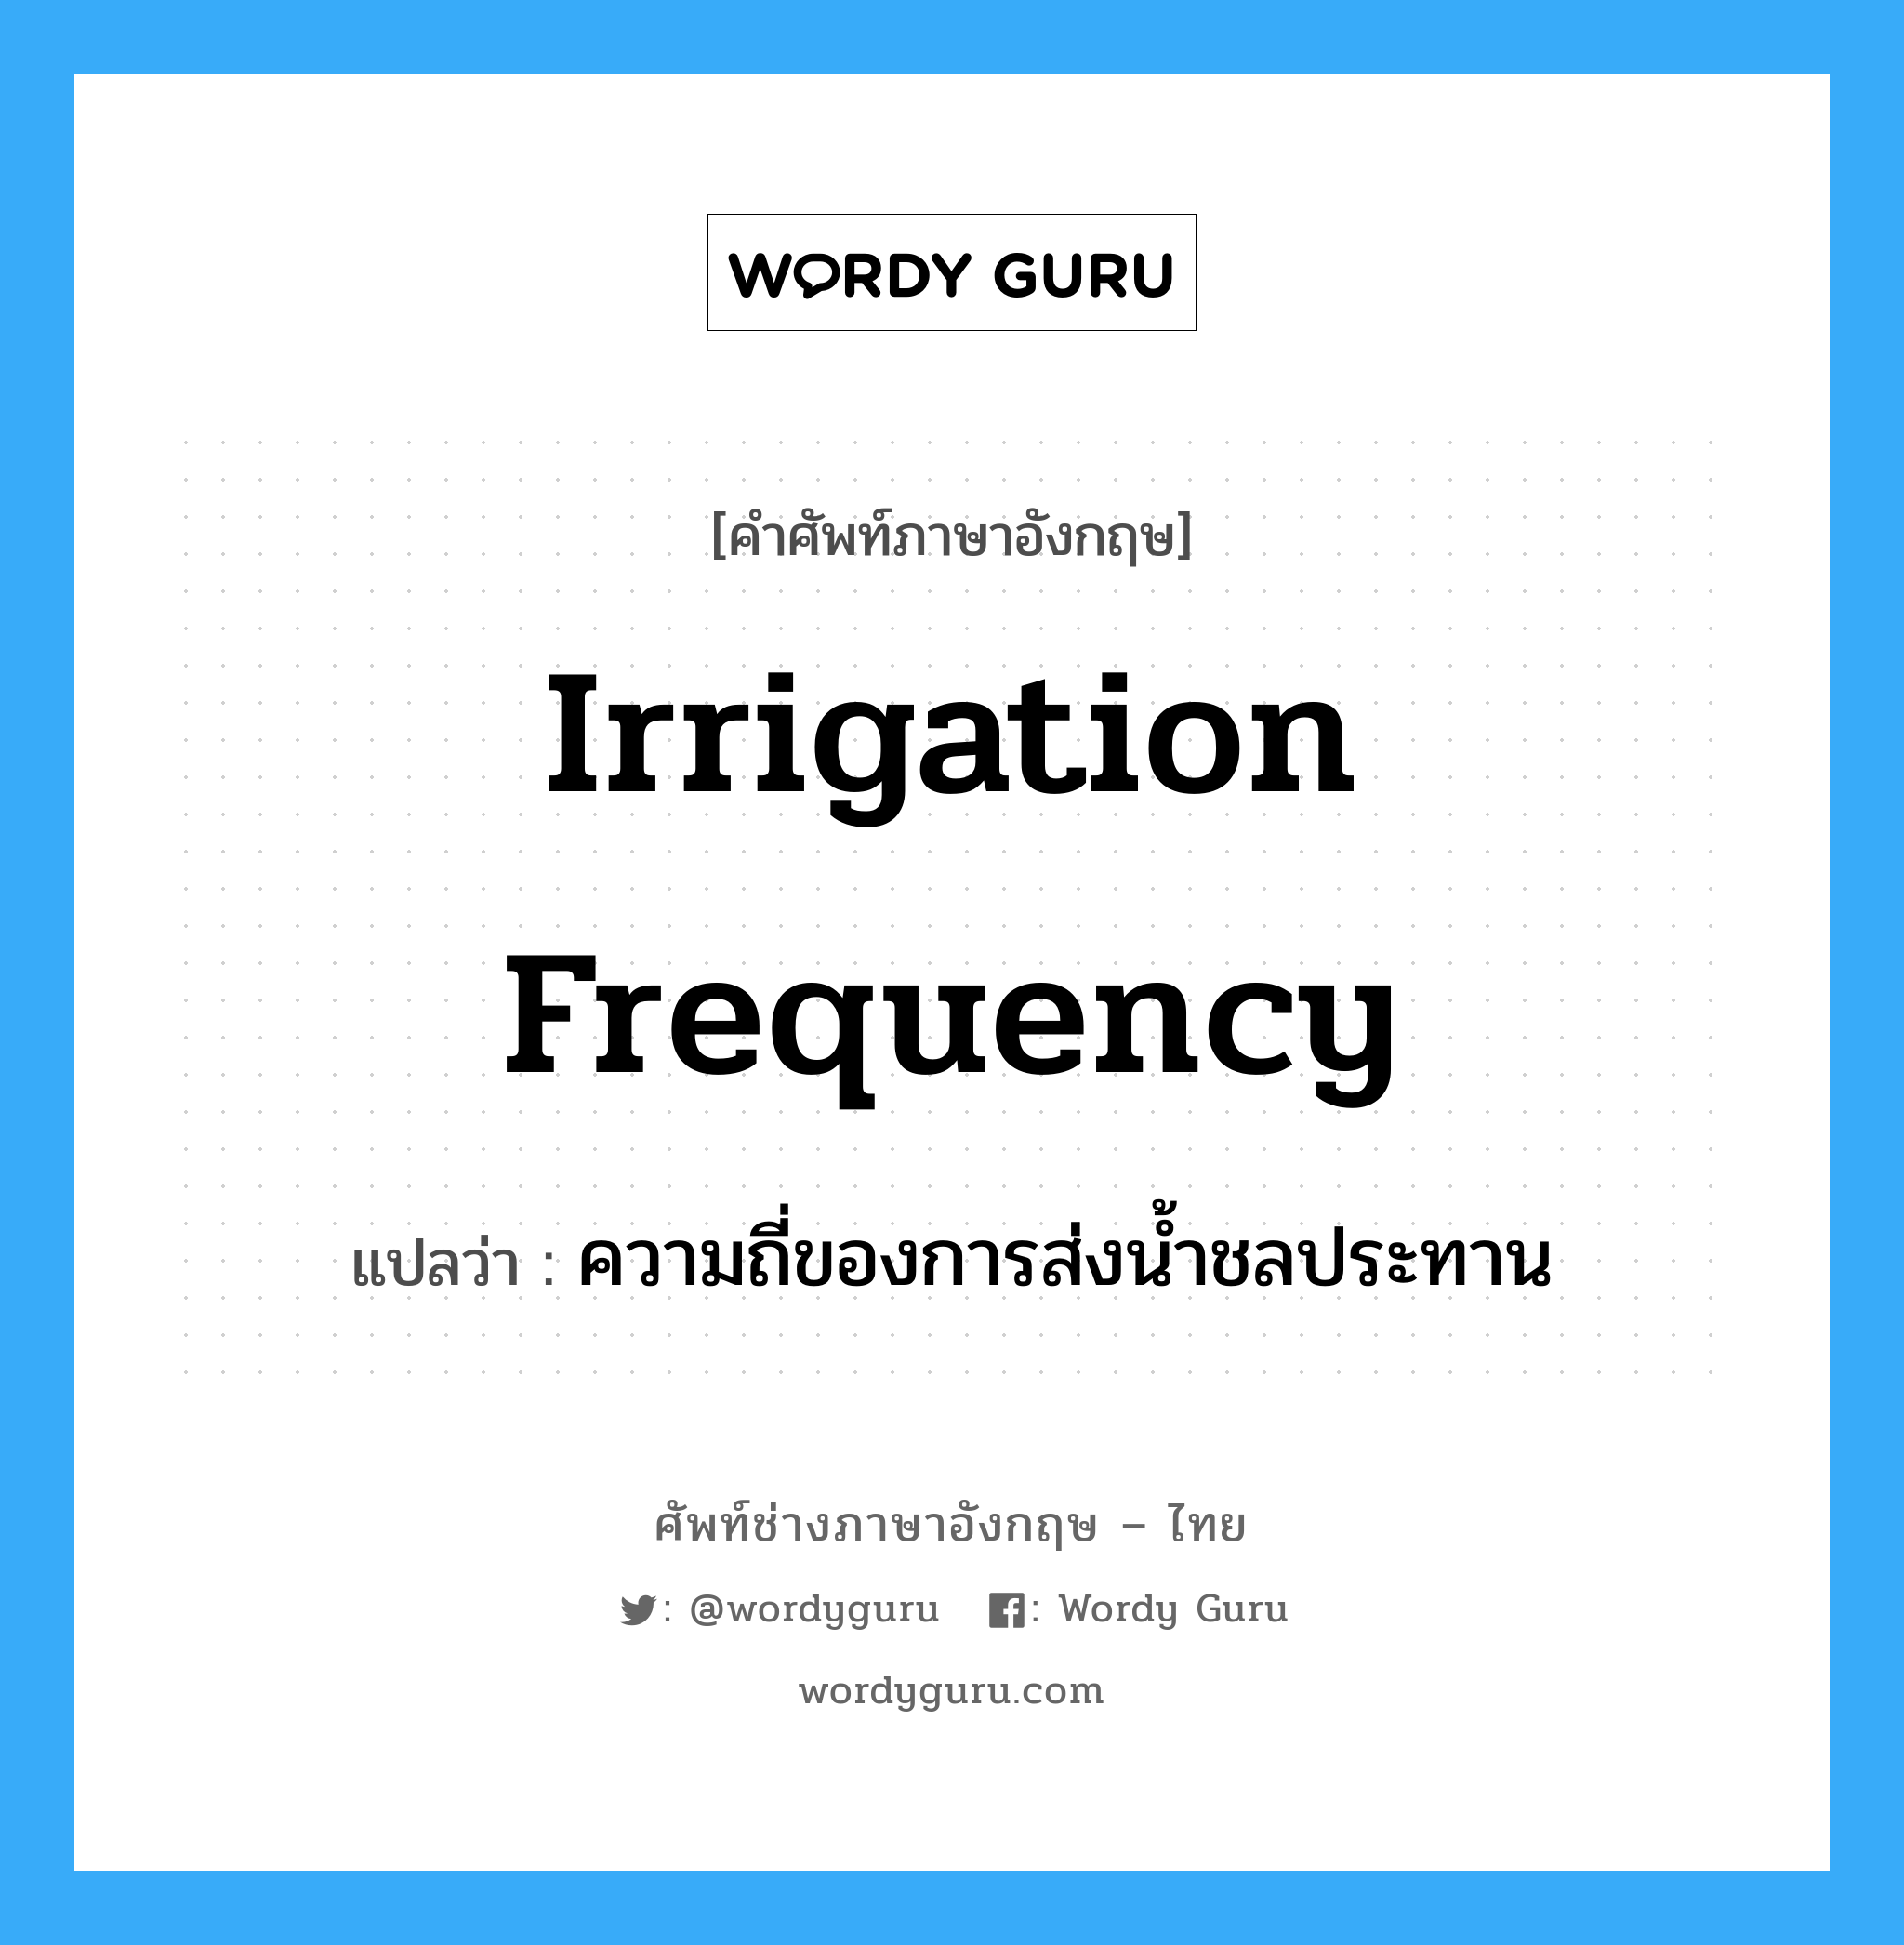 ความถี่ของการส่งน้ำชลประทาน ภาษาอังกฤษ?, คำศัพท์ช่างภาษาอังกฤษ - ไทย ความถี่ของการส่งน้ำชลประทาน คำศัพท์ภาษาอังกฤษ ความถี่ของการส่งน้ำชลประทาน แปลว่า irrigation frequency